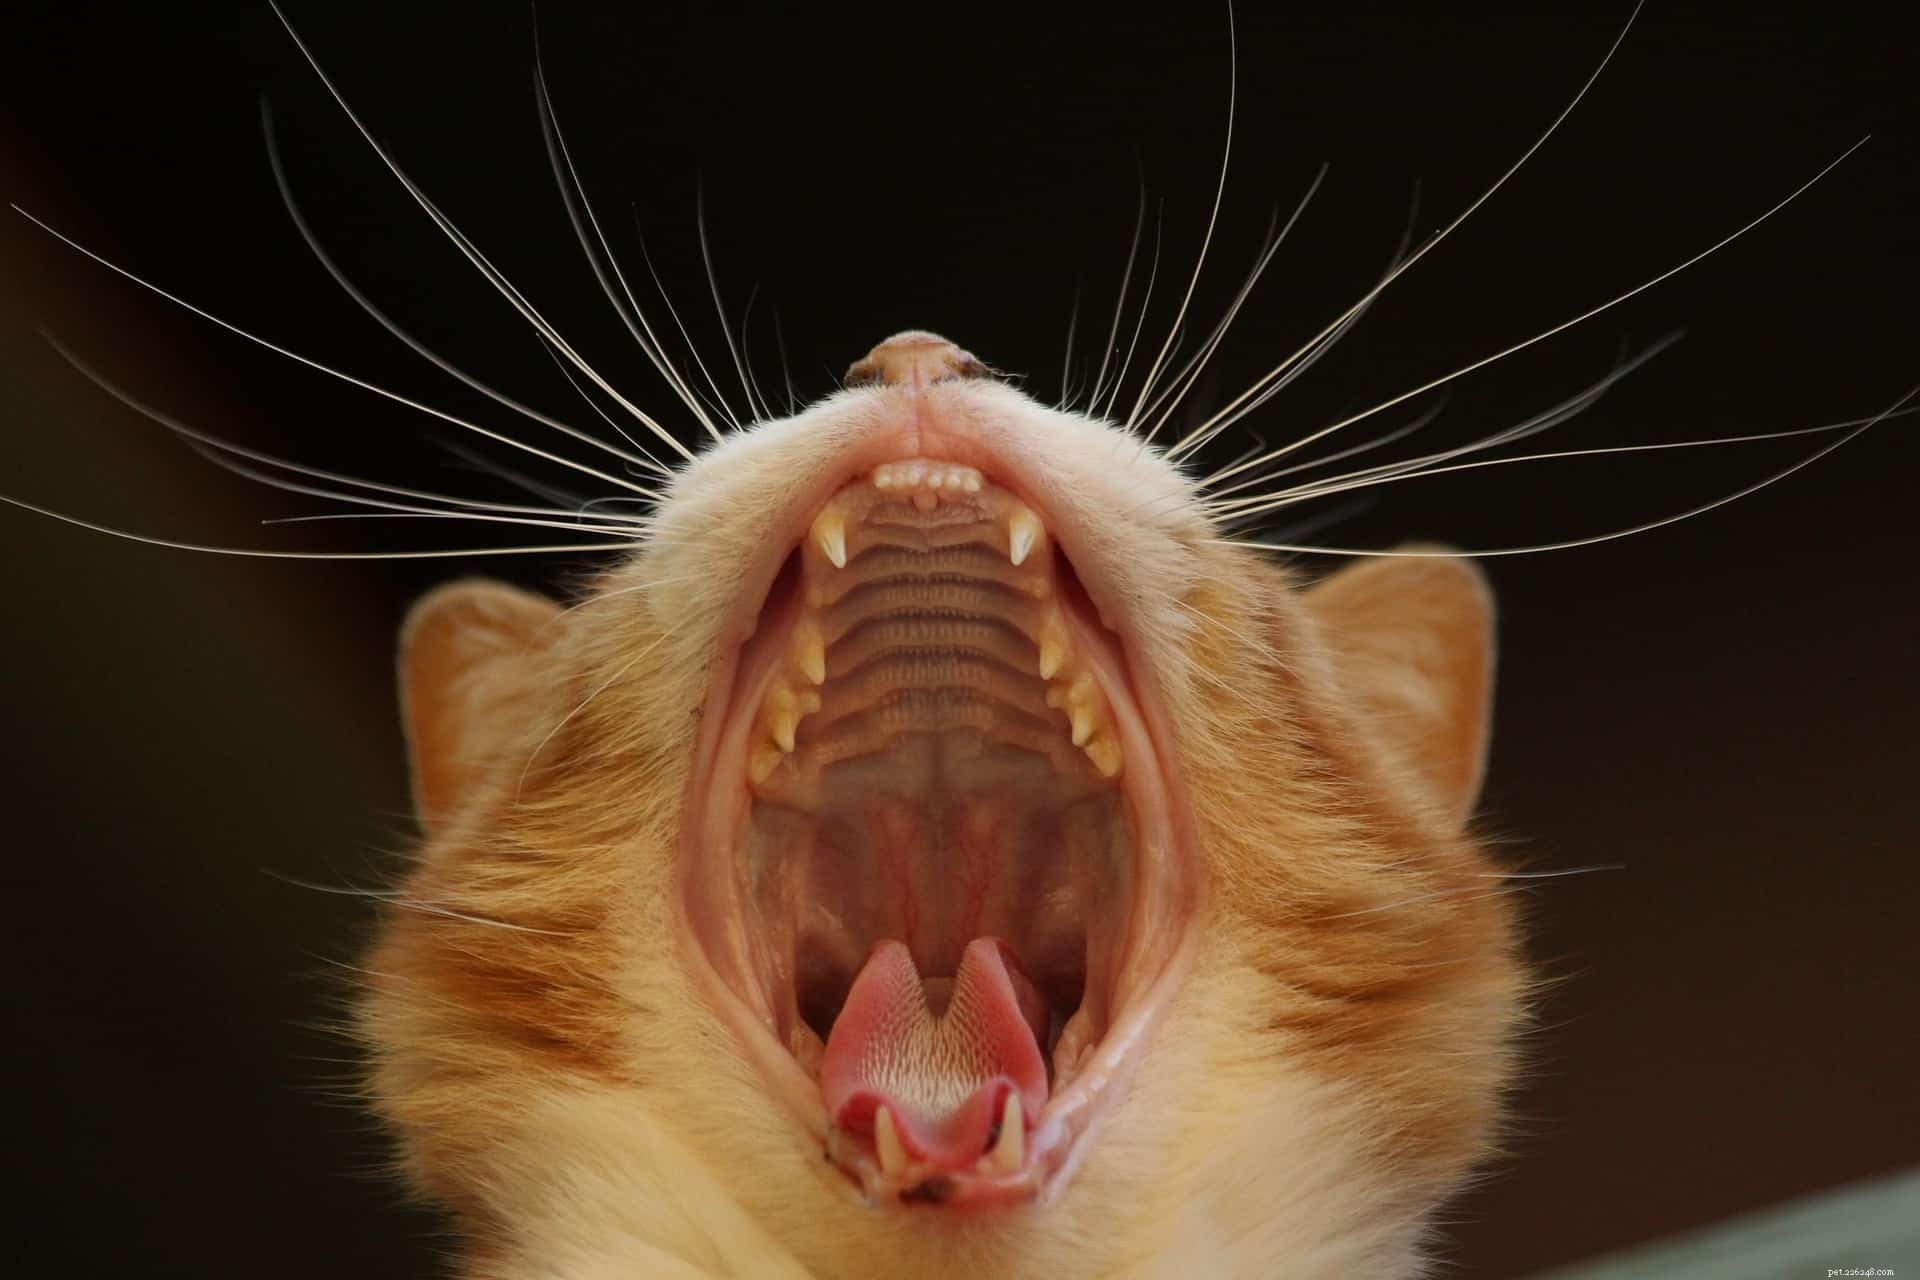 Perché i gatti hanno la lingua uncinata?